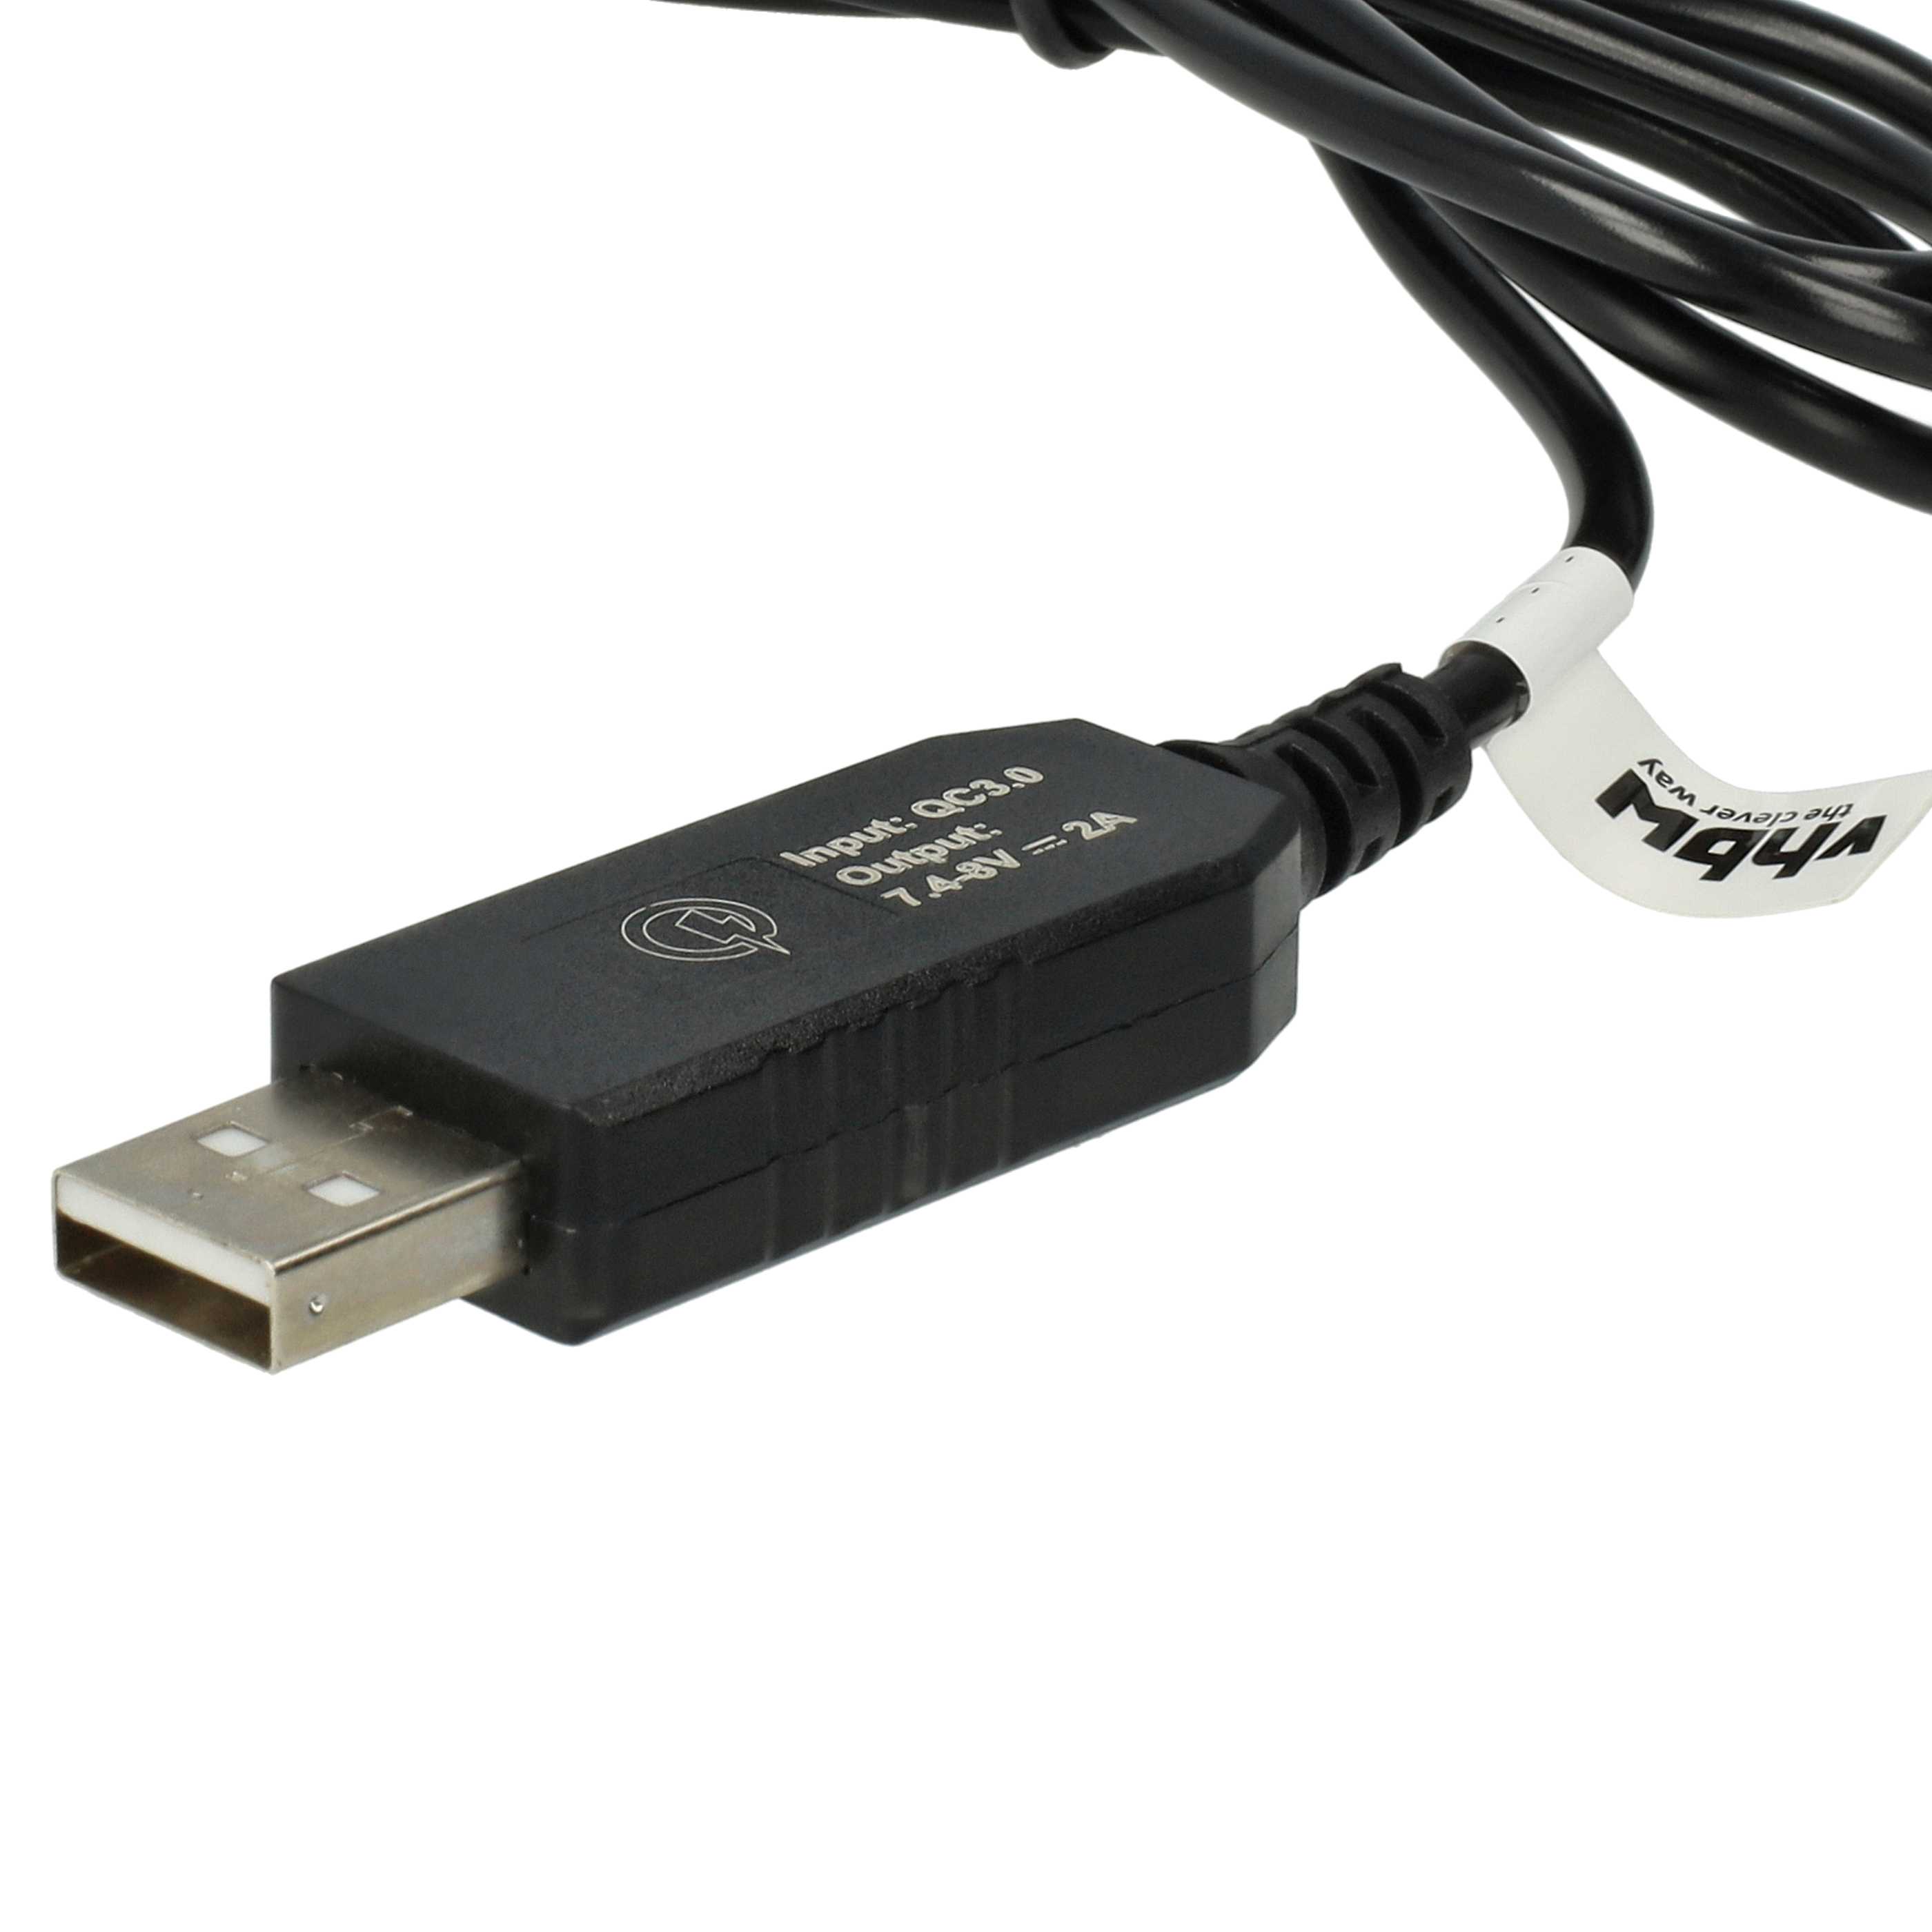 Cable de carga USB para cámaras, videocámaras Canon acoplador CC - 90 cm